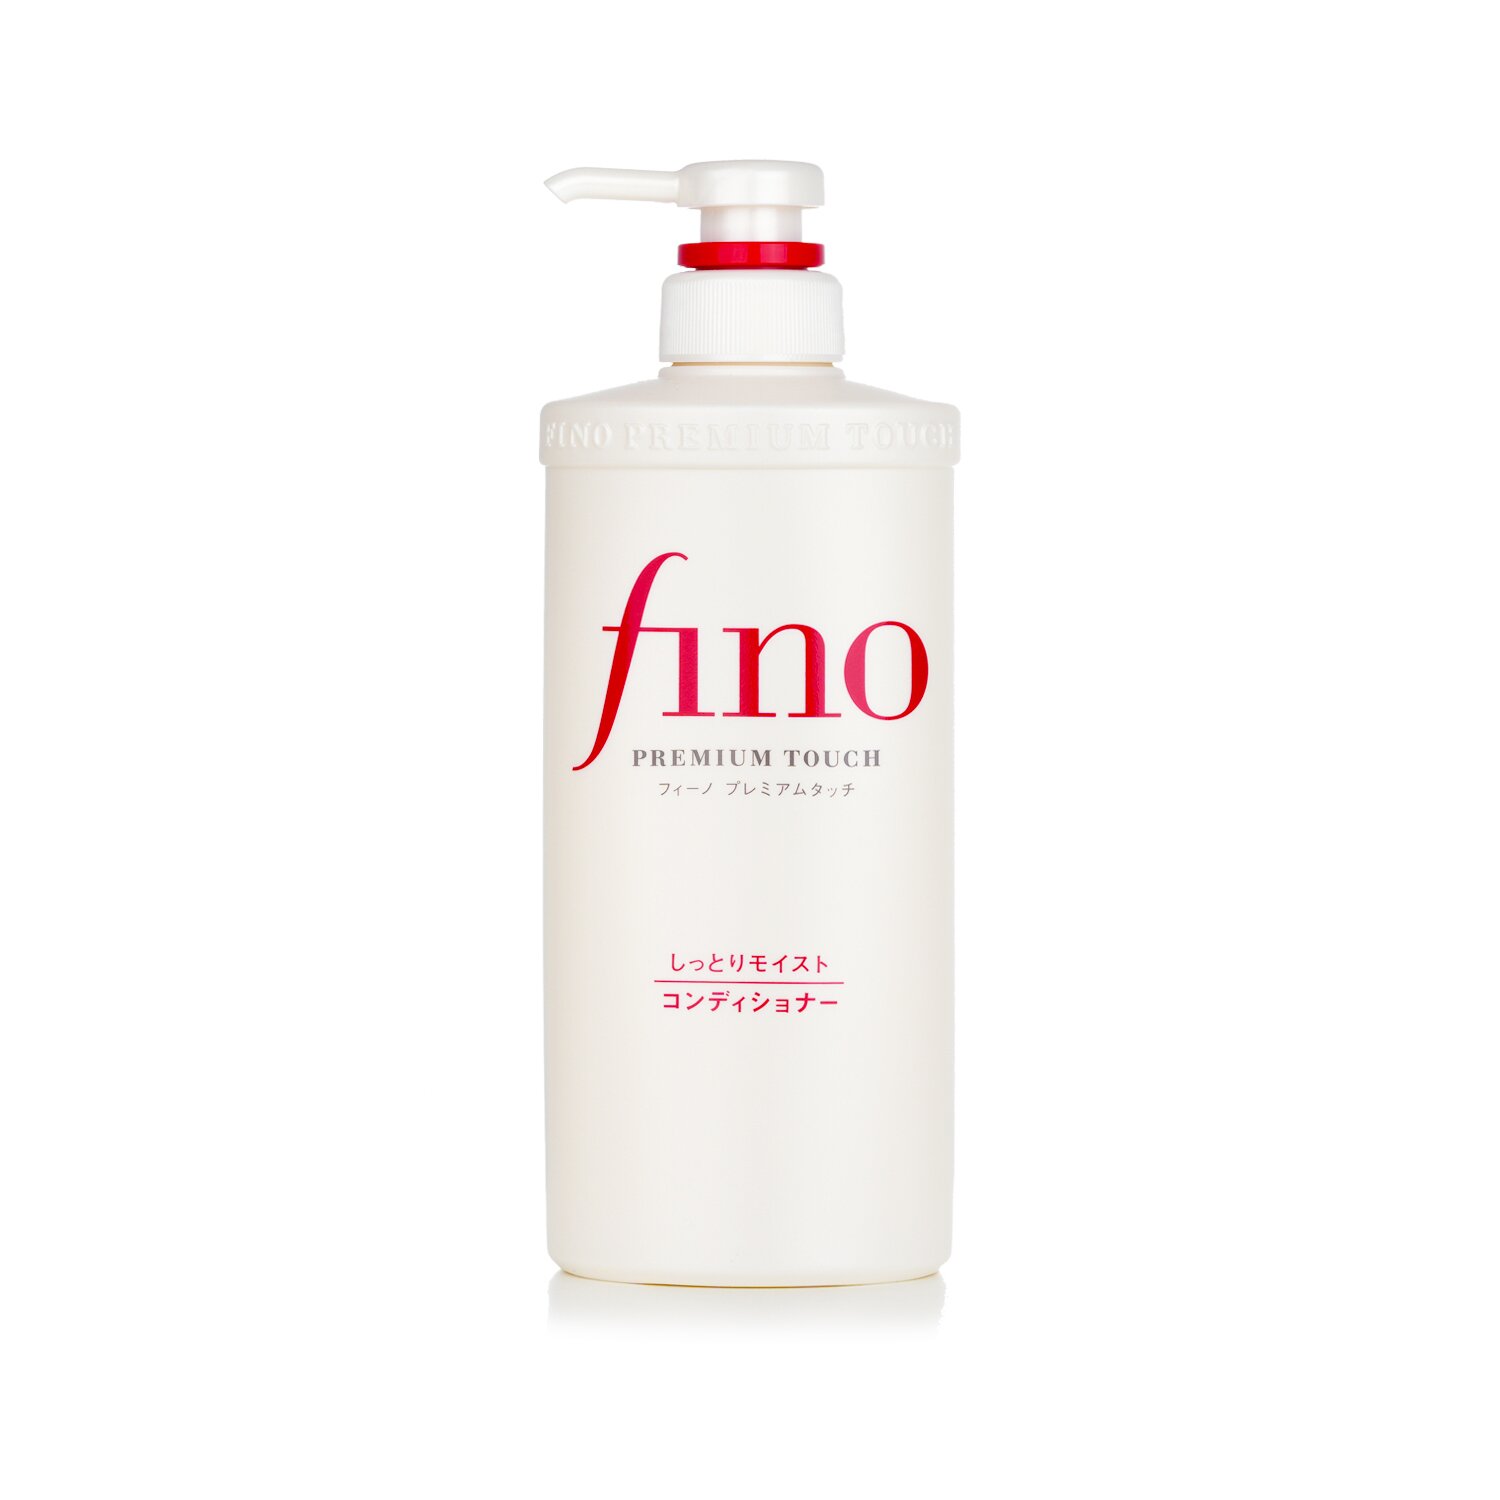 資生堂 Shiseido - Fino 高效滲透修復髮膜